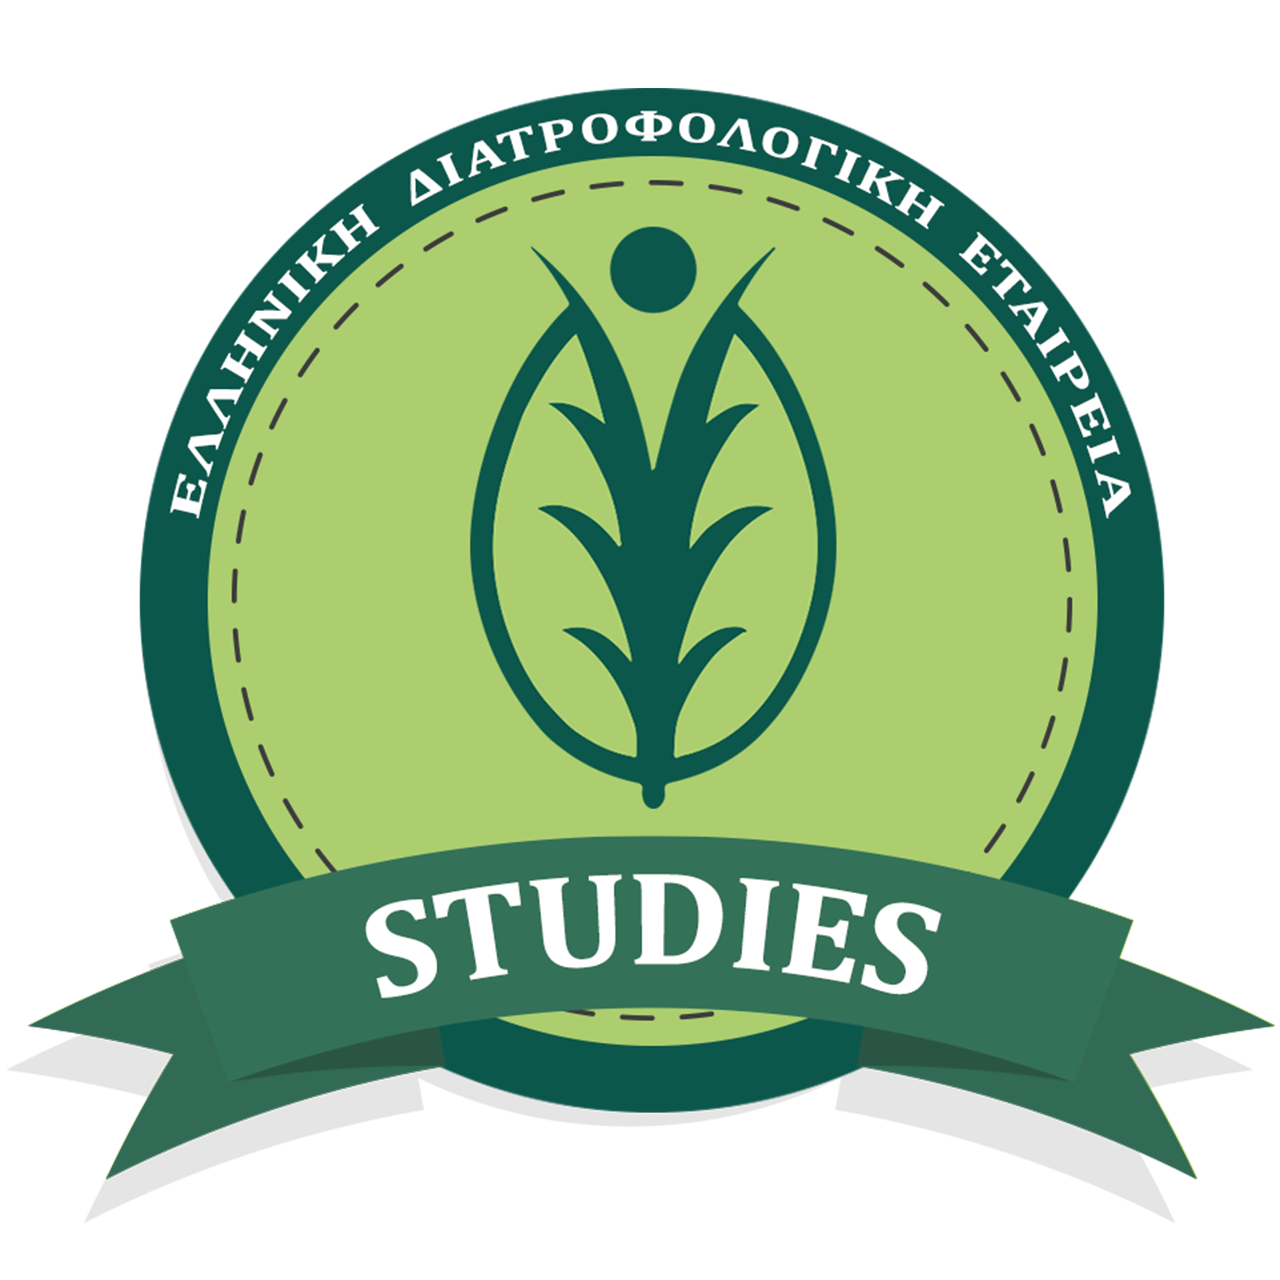 ΕΛΔΕ studies - Ελληνική Διατροφολογική Εταιρεία